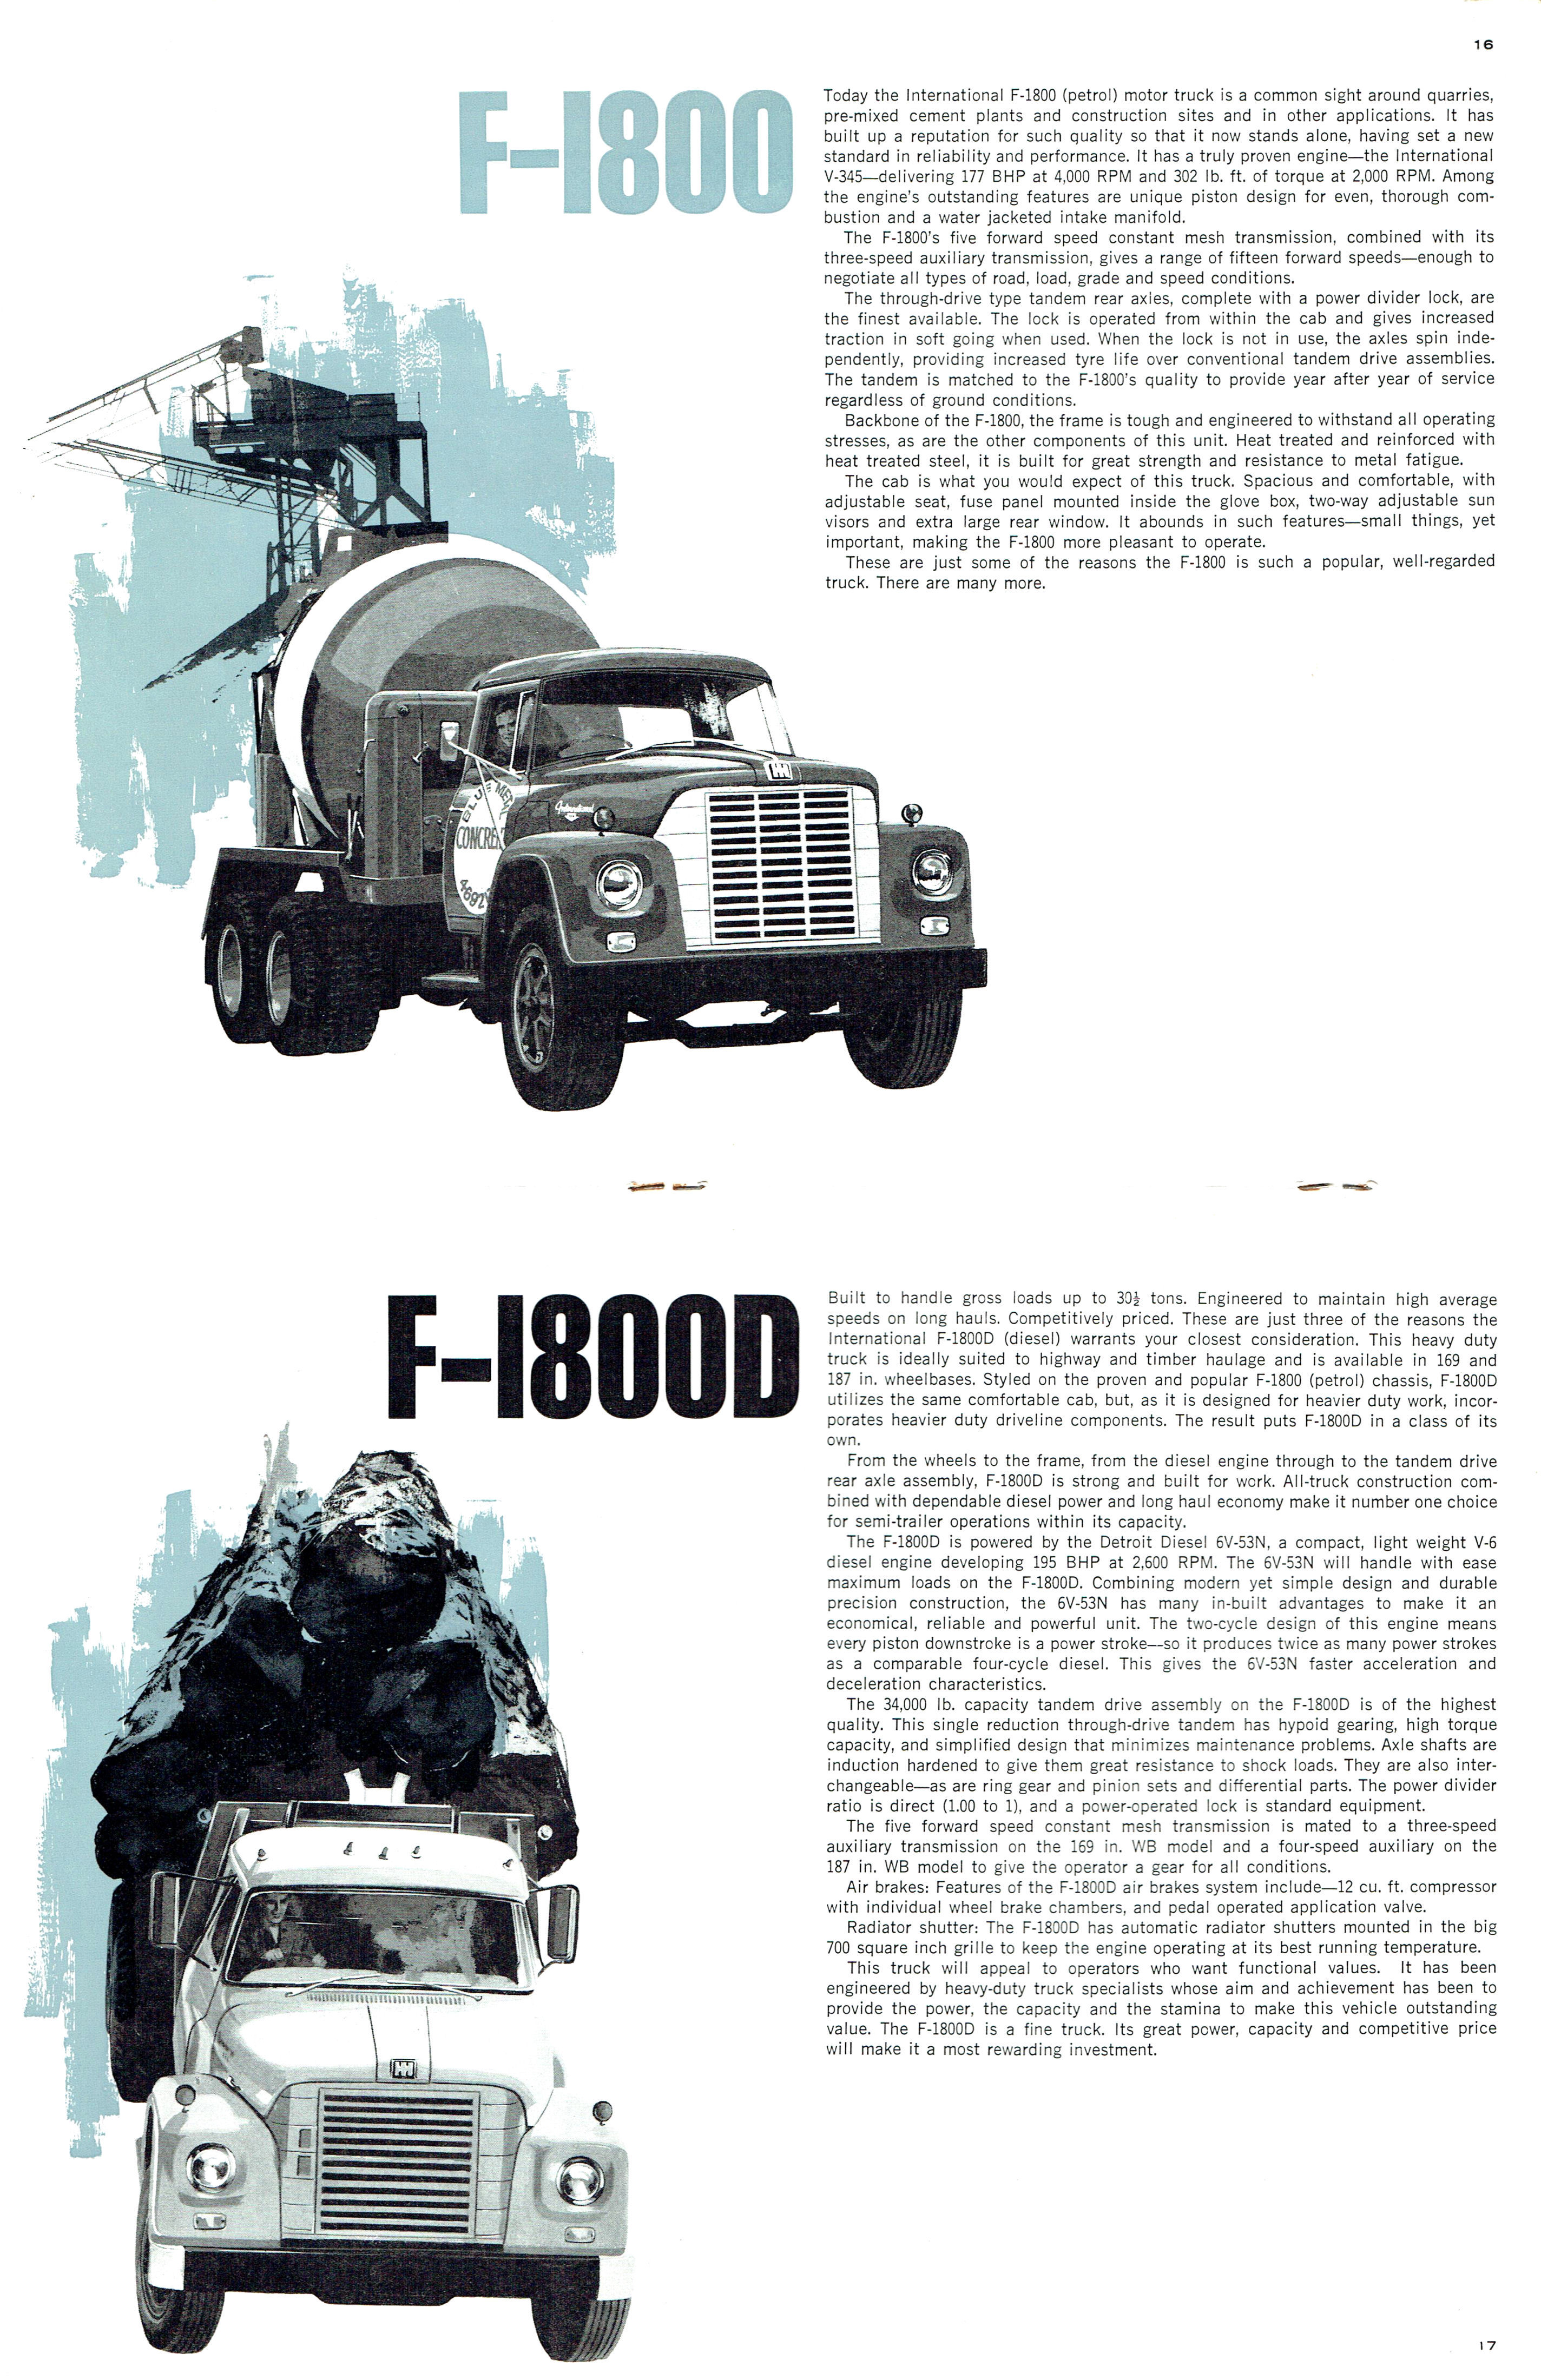 1969_Intrernational_Motor_Trucks-16-17